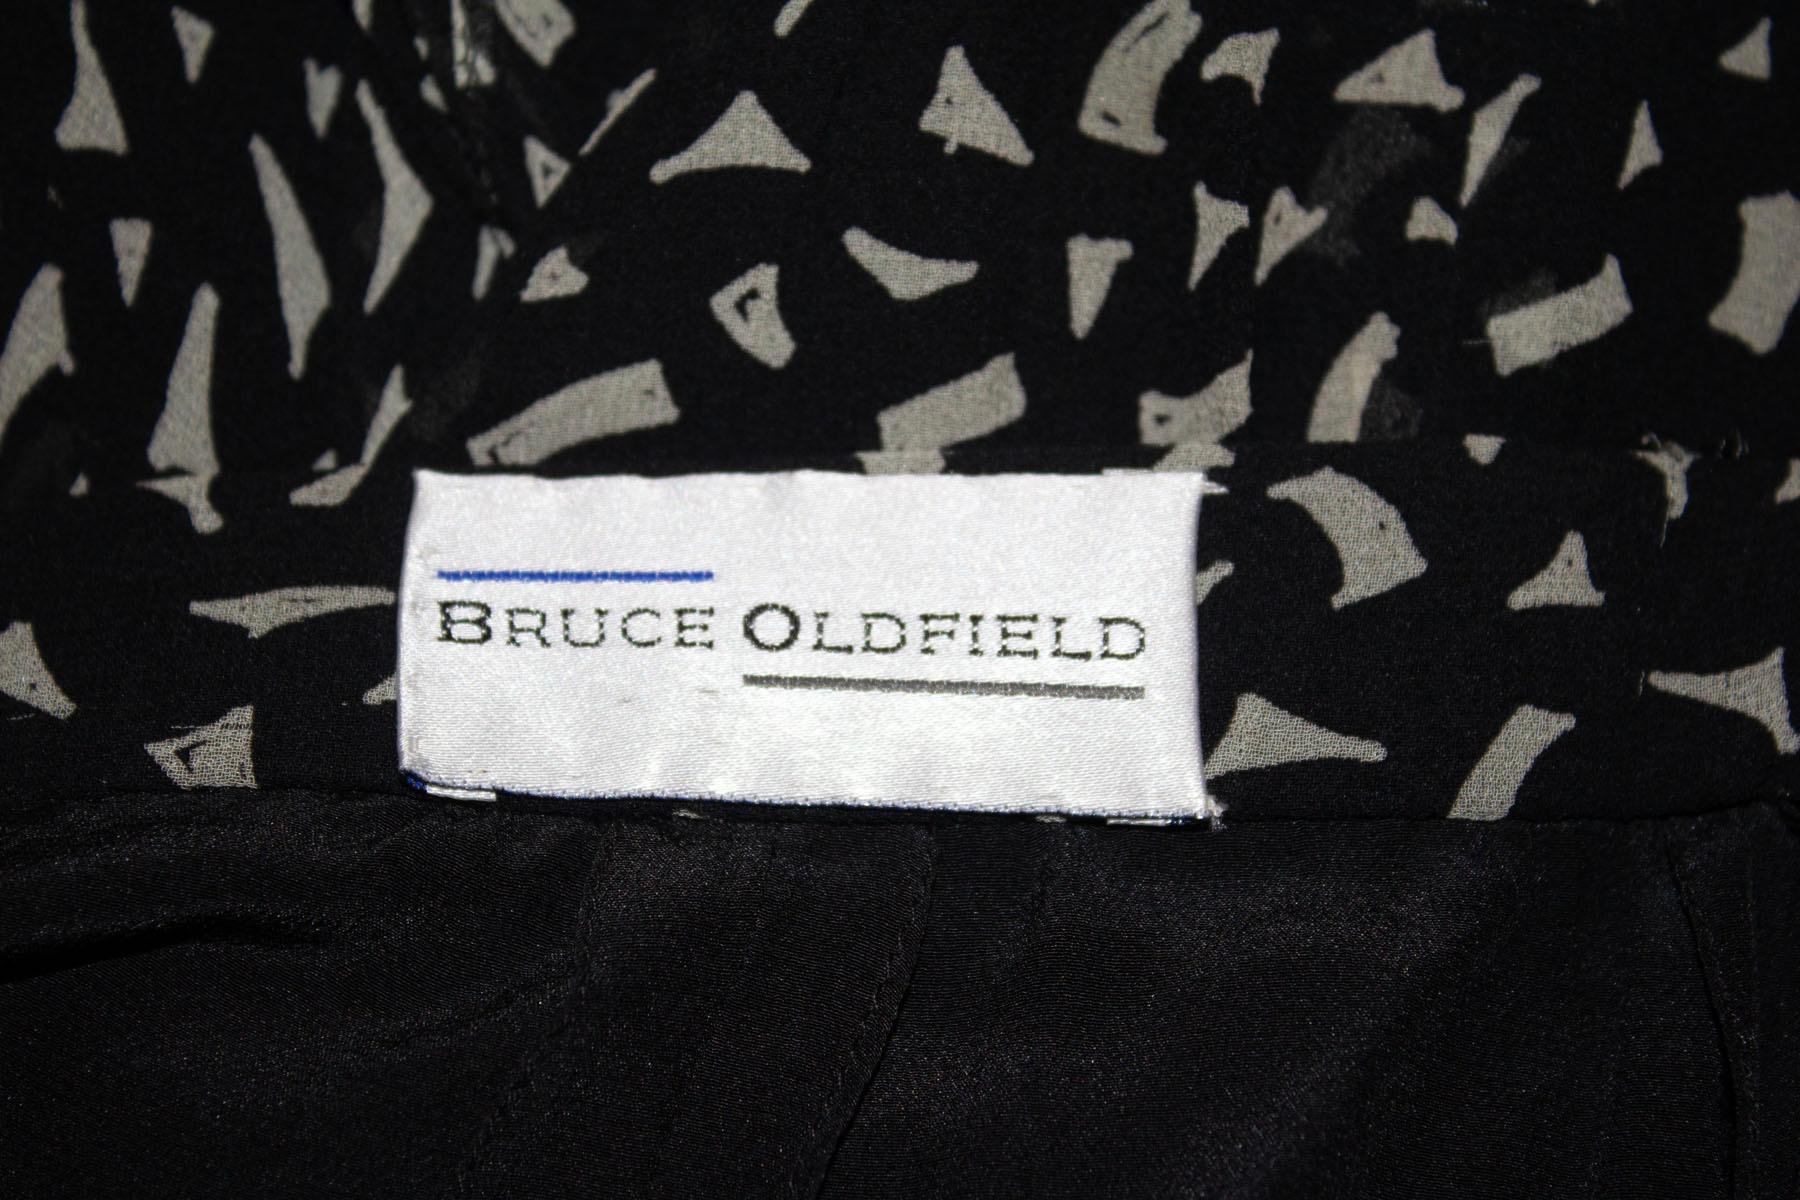 Ein wunderschöner Vintage-Seidenrock von Bruce Oldfield.
Der Rock hat einen abstrakten schwarz-weißen Druck, eine tolle Schnittführung und eine Rüsche am Rücken. Sie ist vollständig gefüttert und hat einen zentralen Reißverschluss auf der